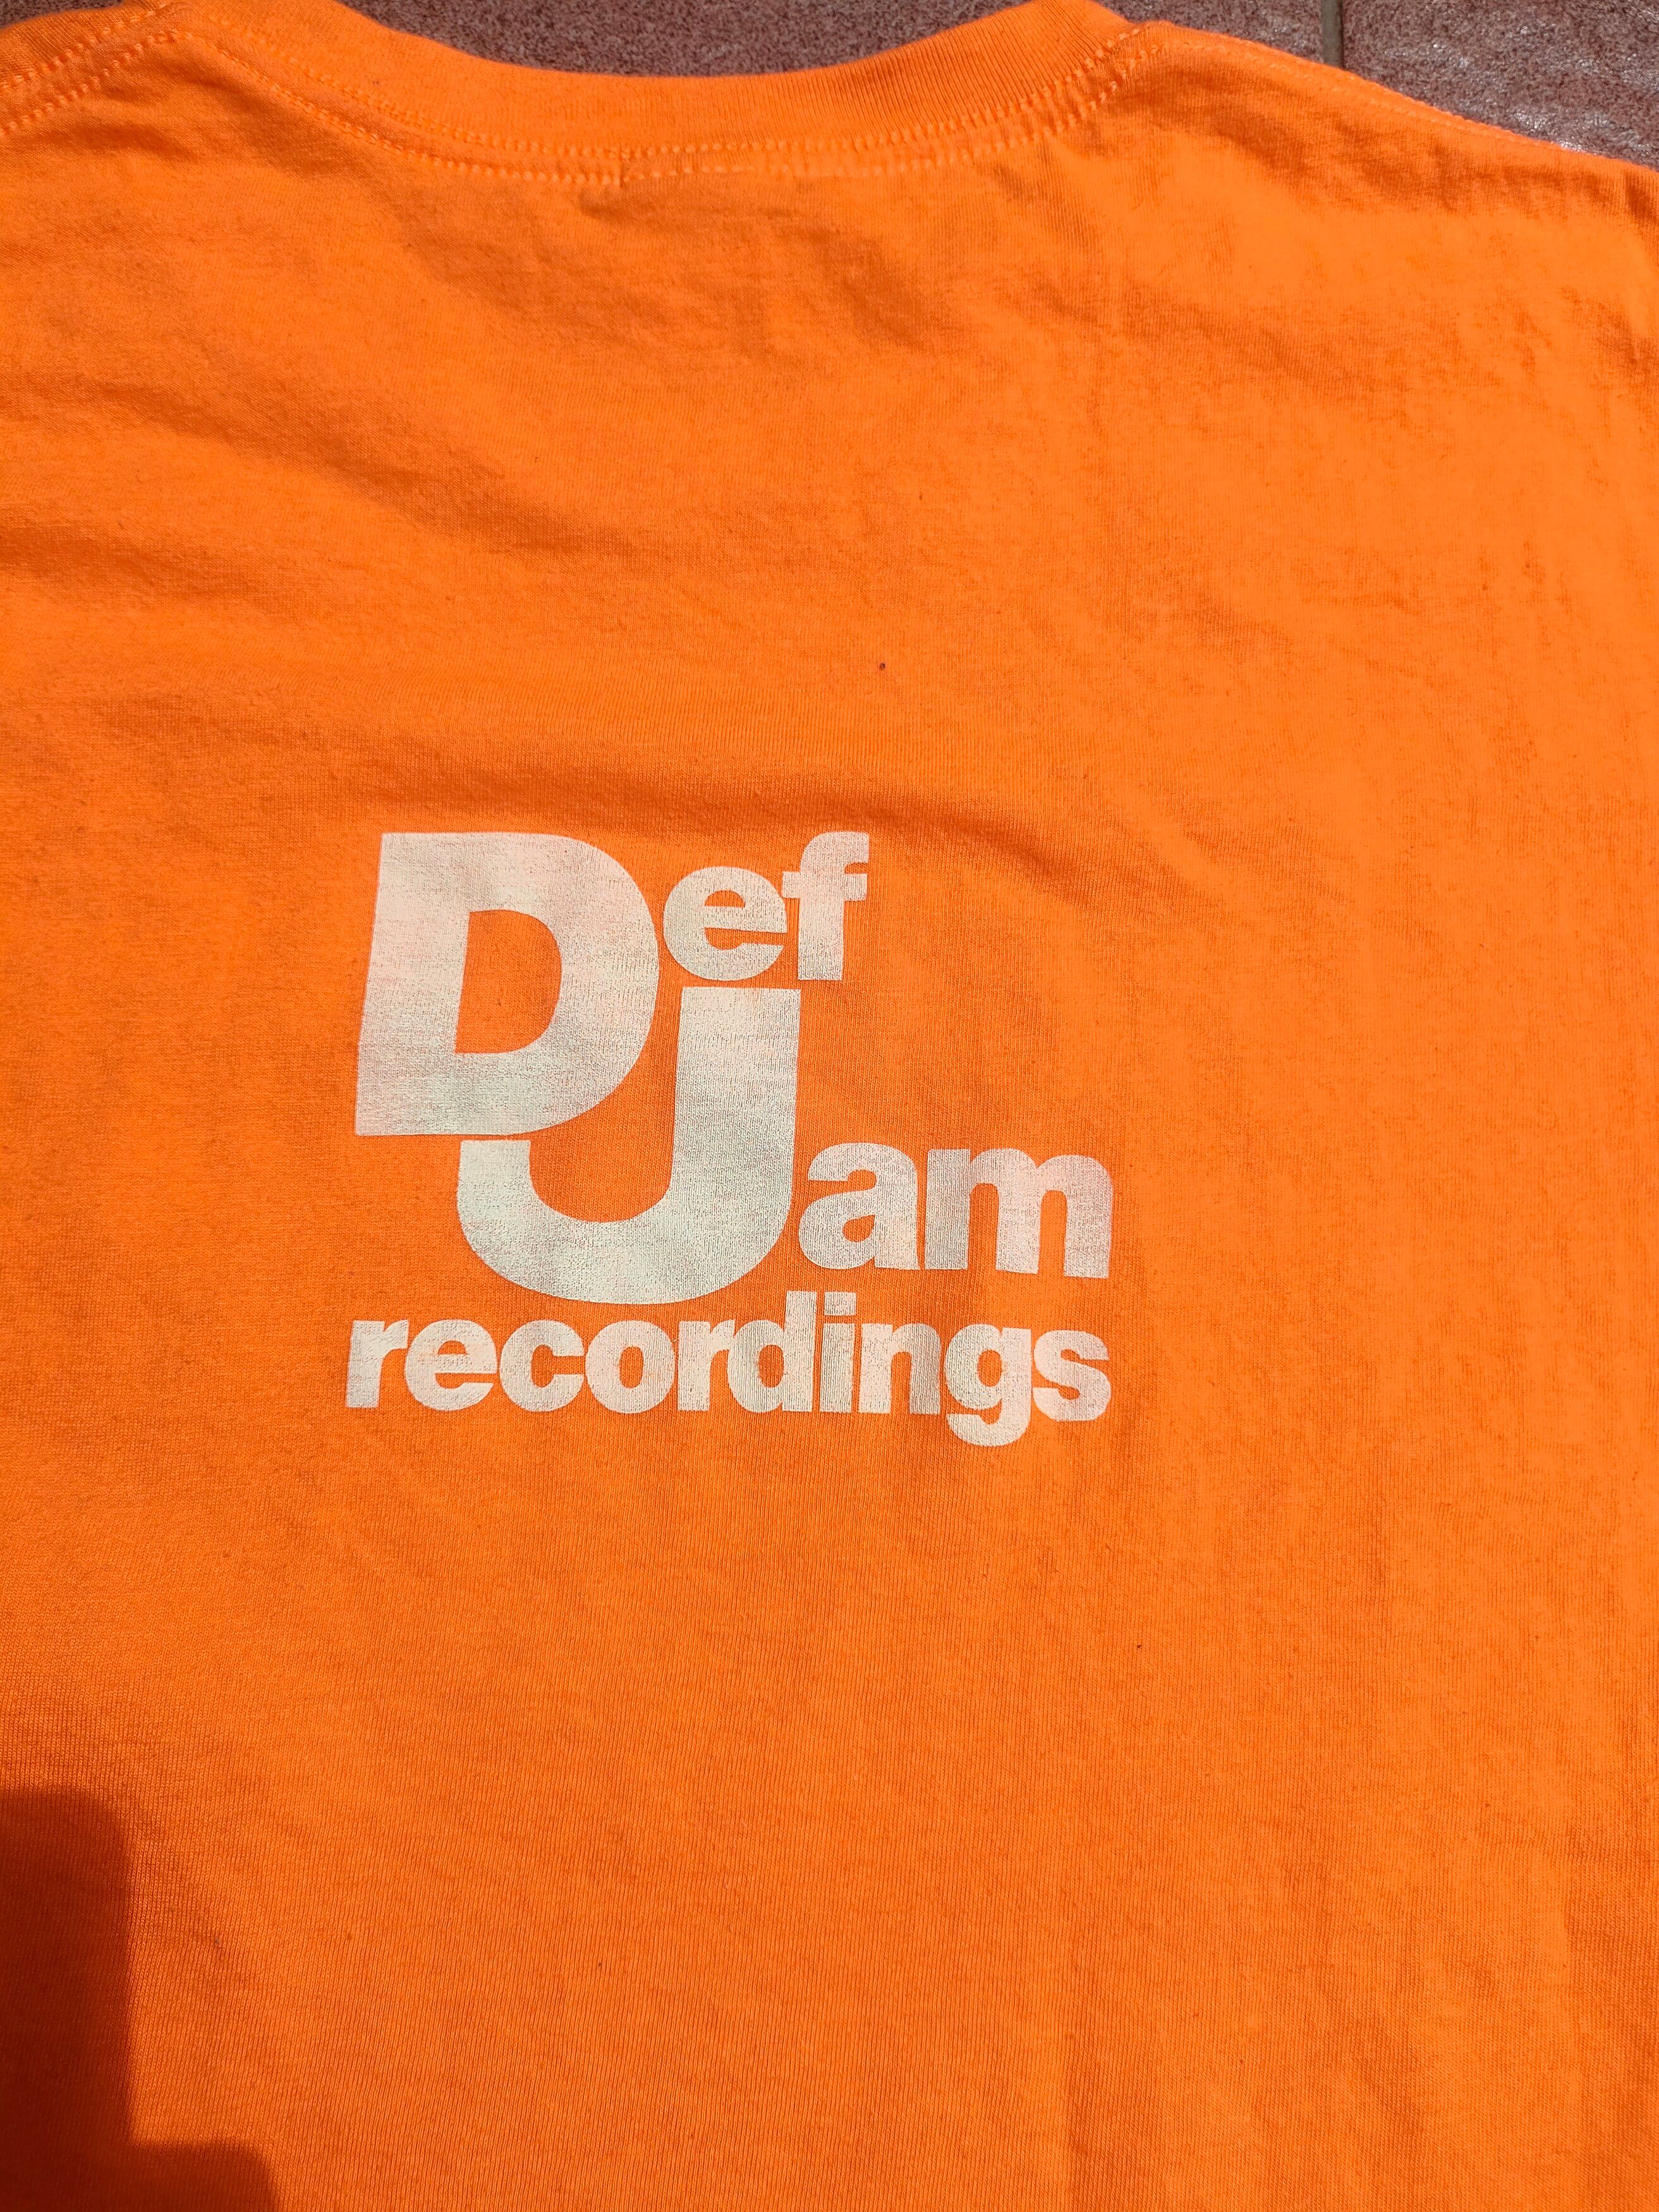 Vintage - Frank Ocean - Channel Orange - Def Jam Recordings - 6